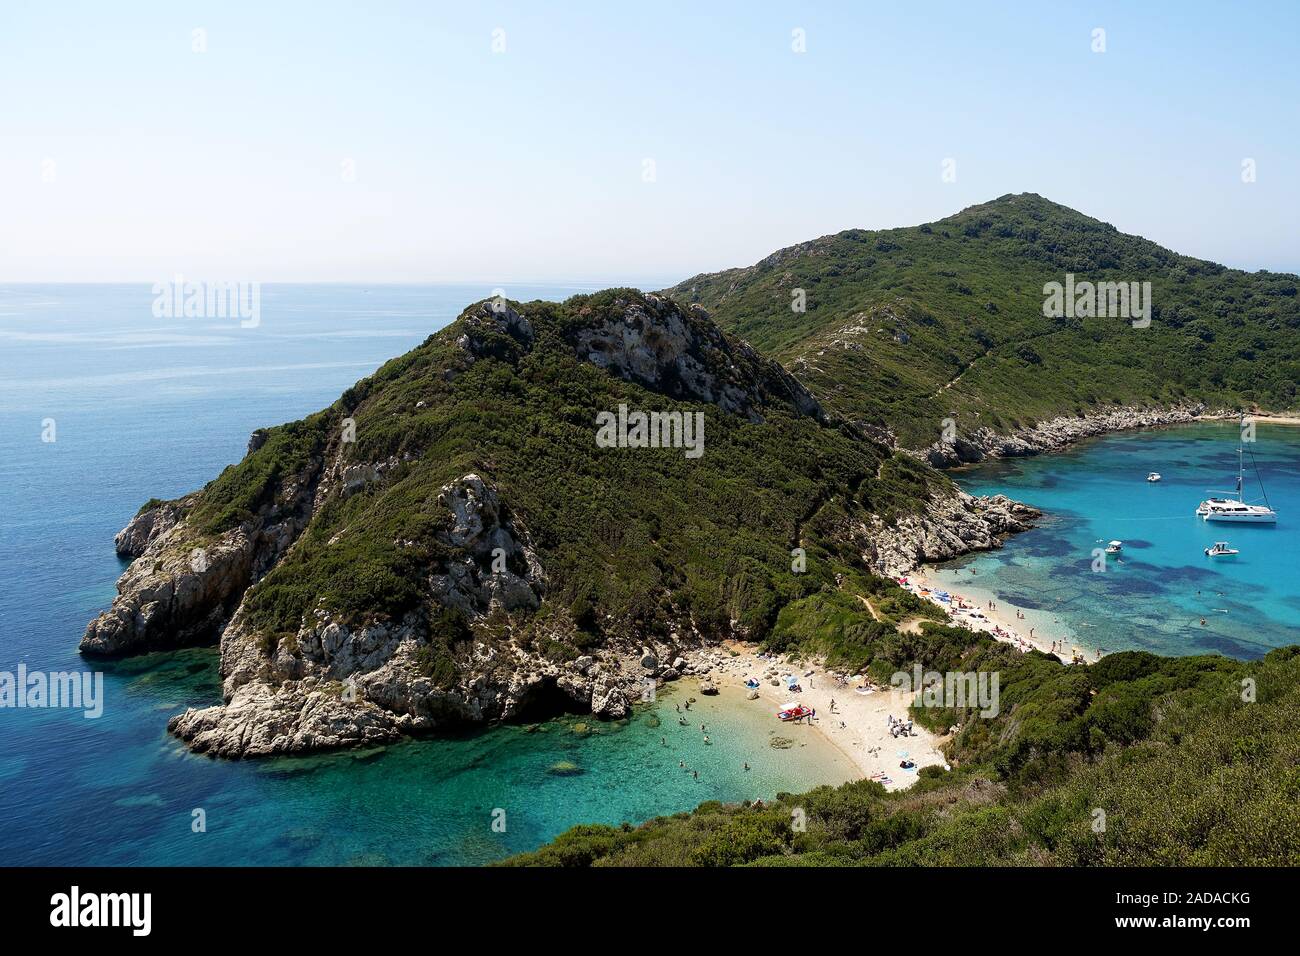 Timoni Bucht in Afionas, ein beliebtes Touristenziel, Korfu, Griechenland Stockfoto